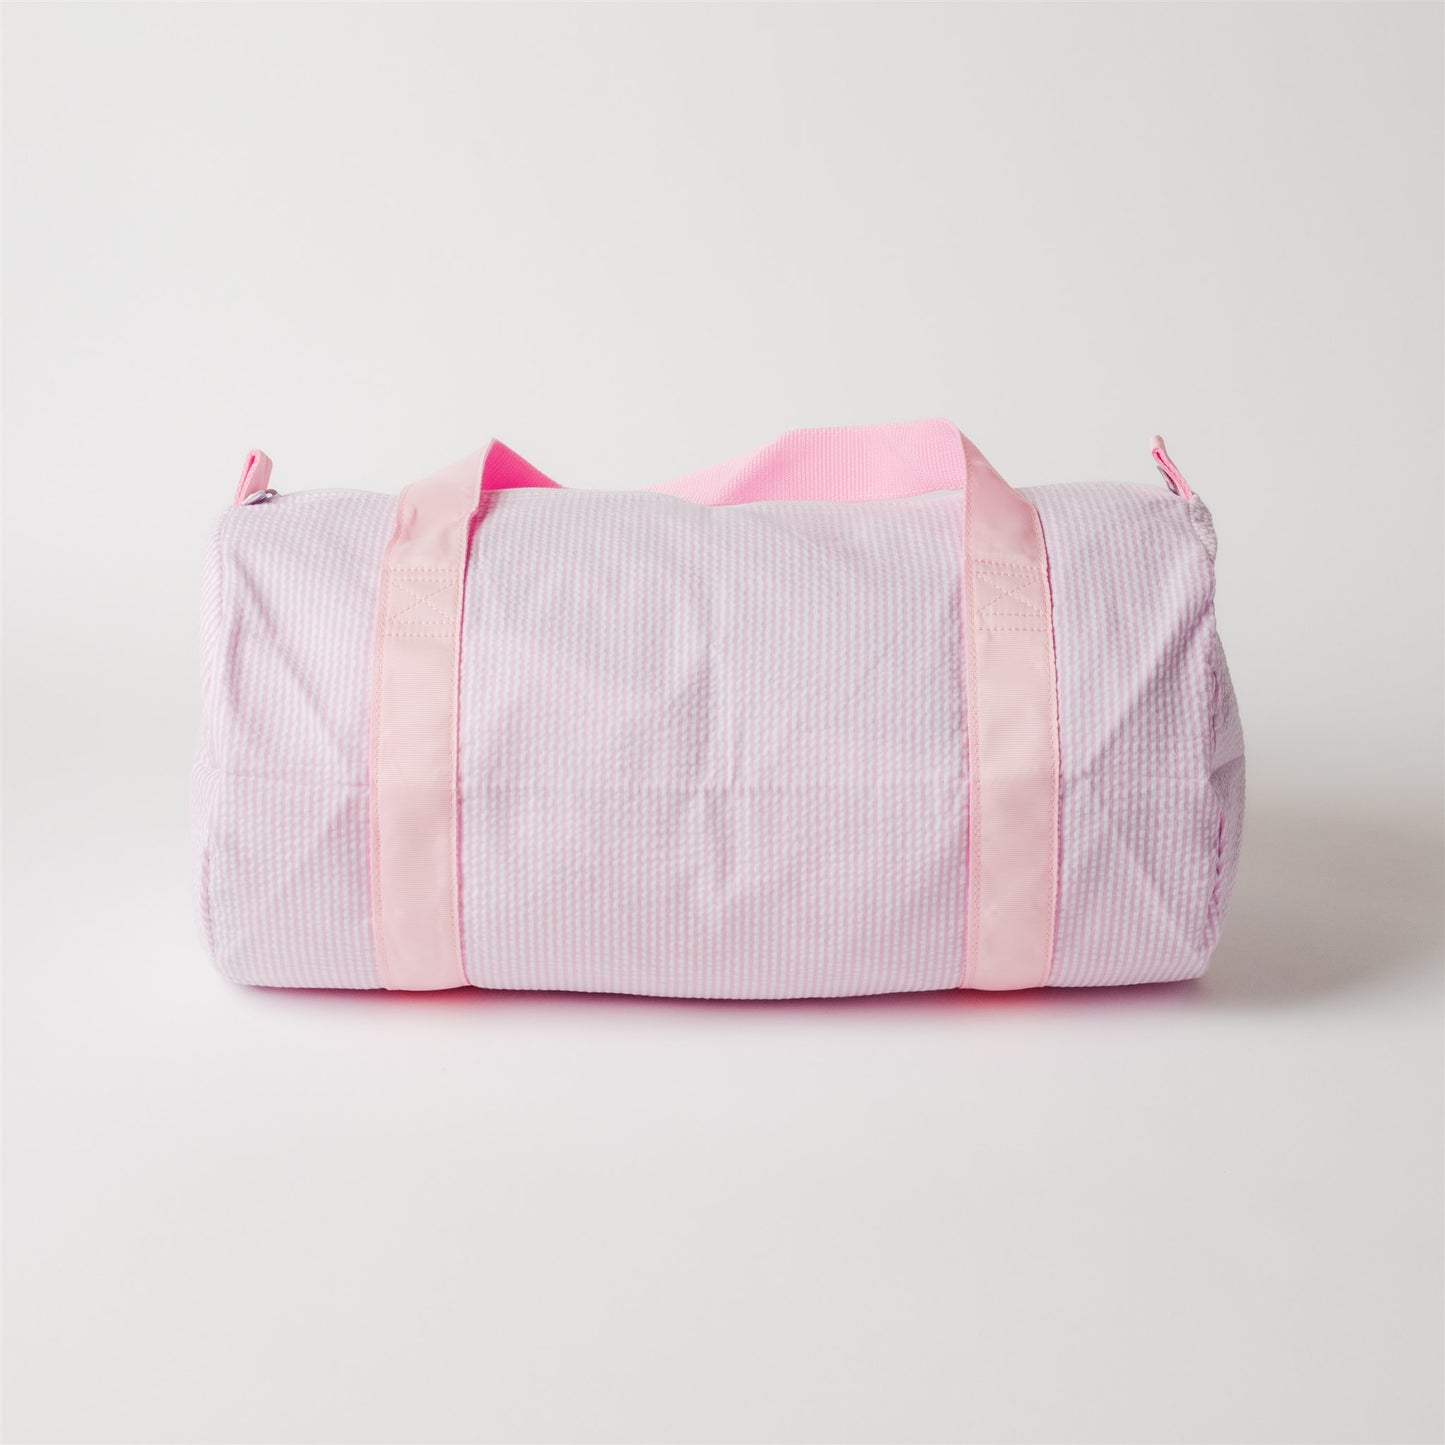 Load image into Gallery viewer, Pink Seersucker Medium Duffel Bag
